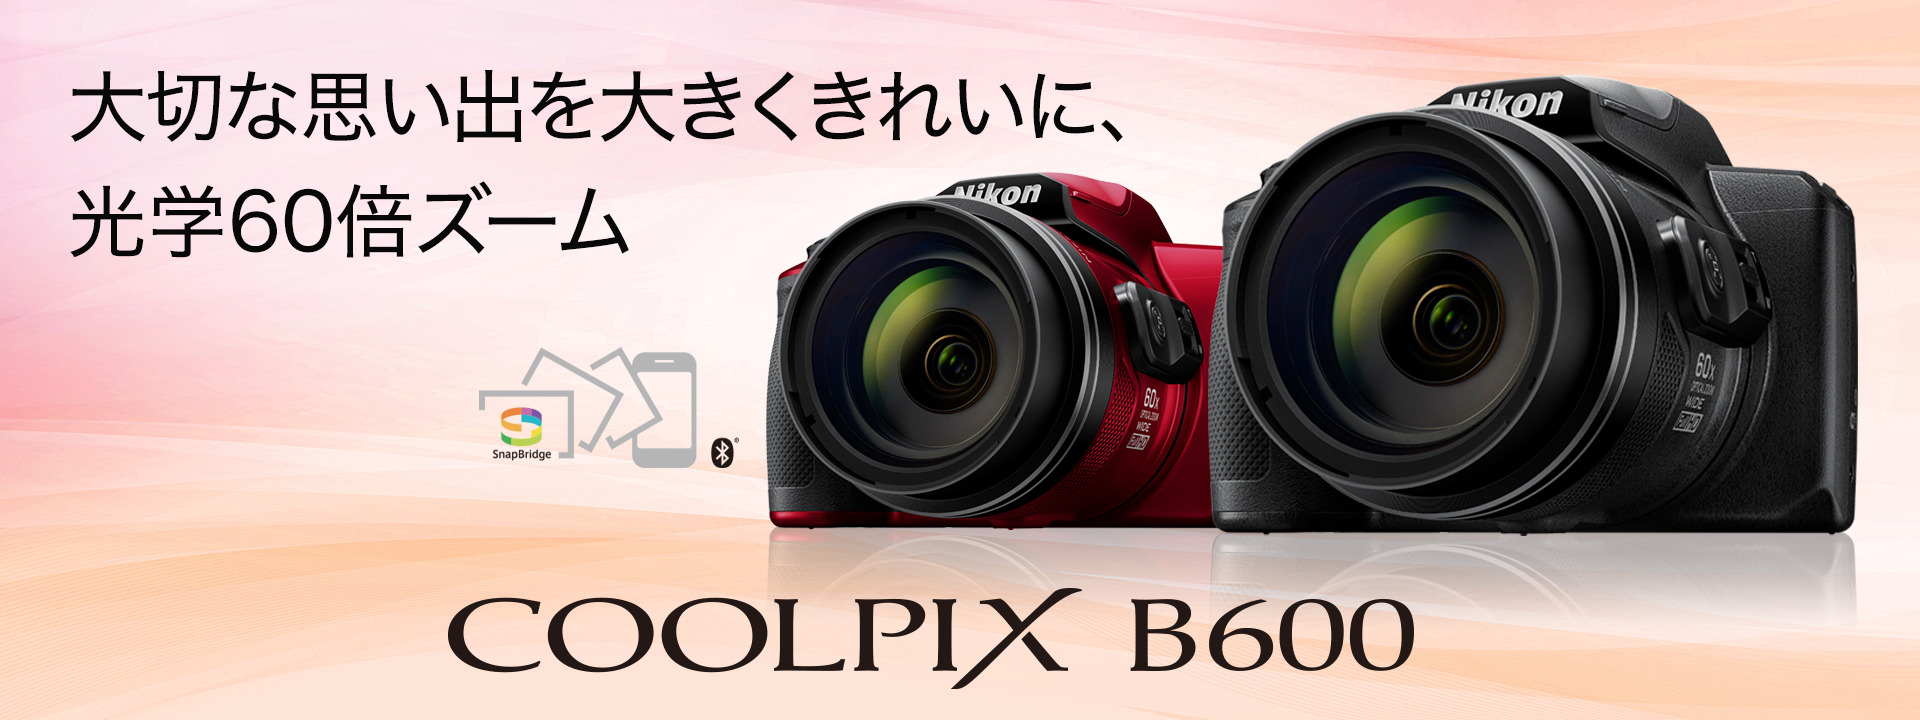 COOLPIX B600 - 概要 | コンパクトデジタルカメラ | ニコンイメージング